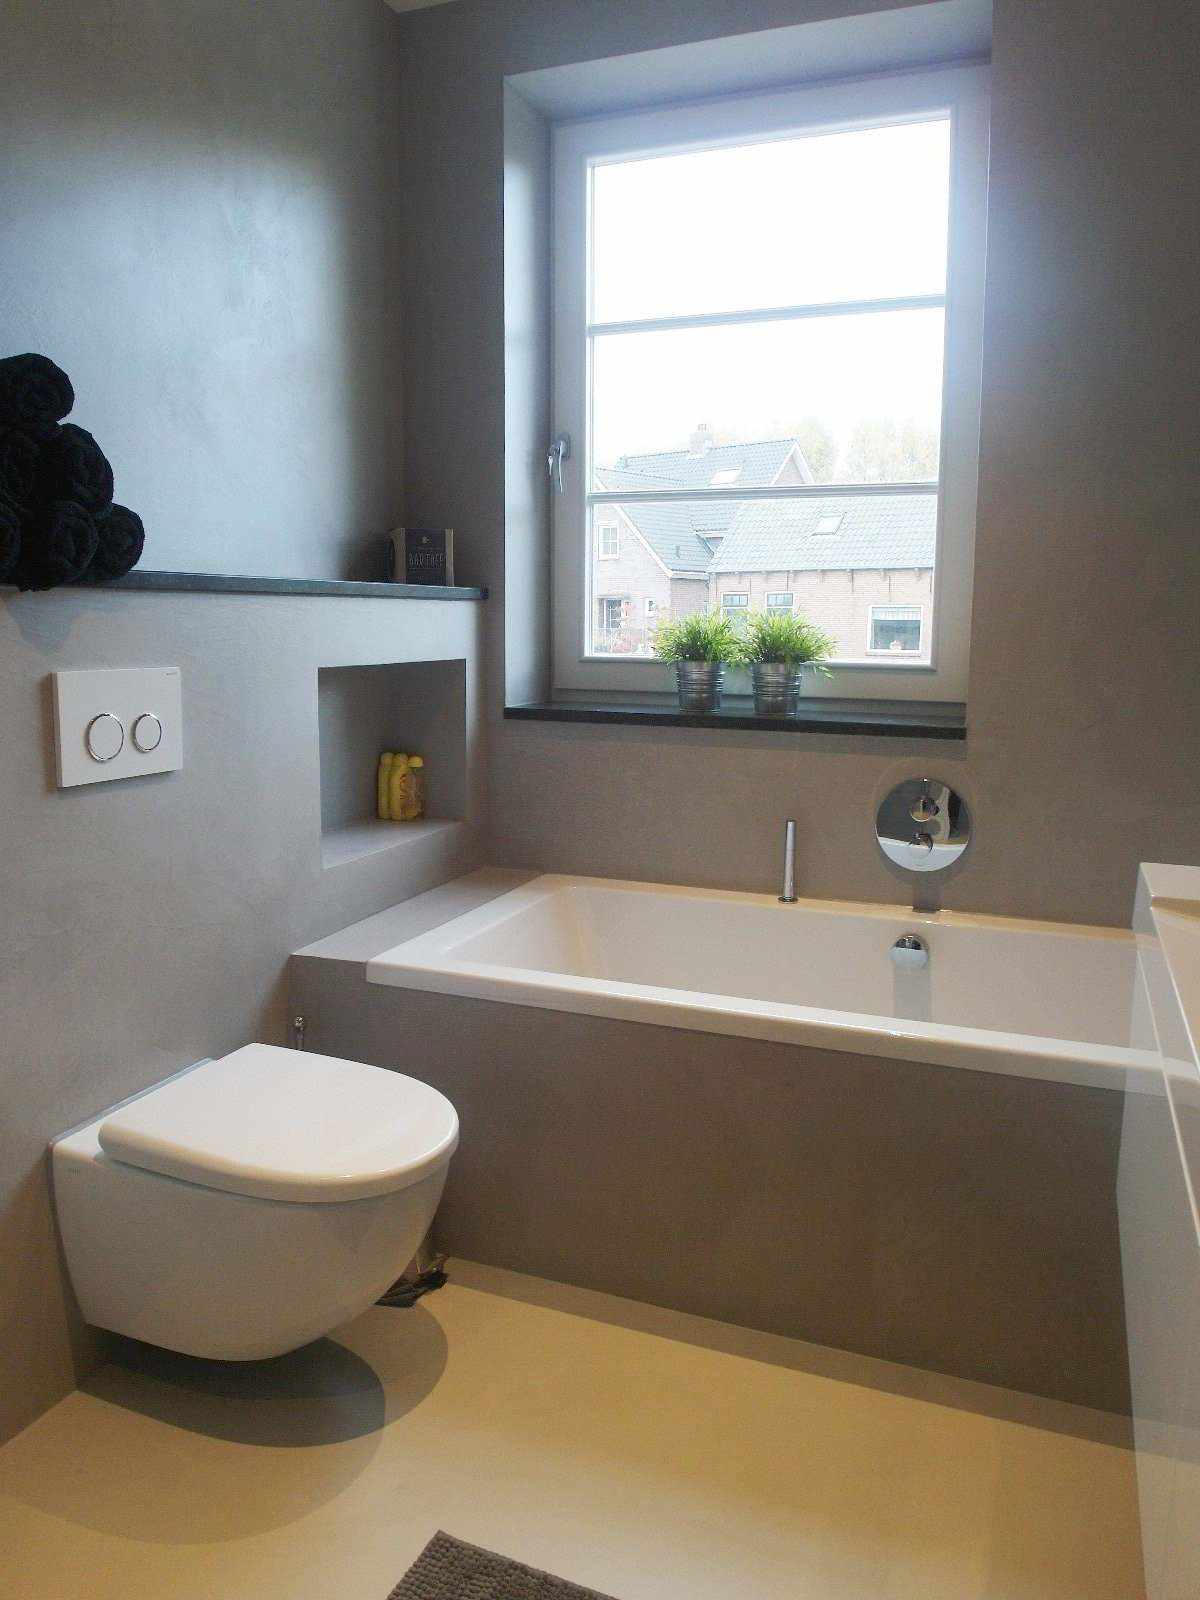 Béton ciré gris sur le mur et le meuble d'une salle de bain en Hollande dans le projet Decas.